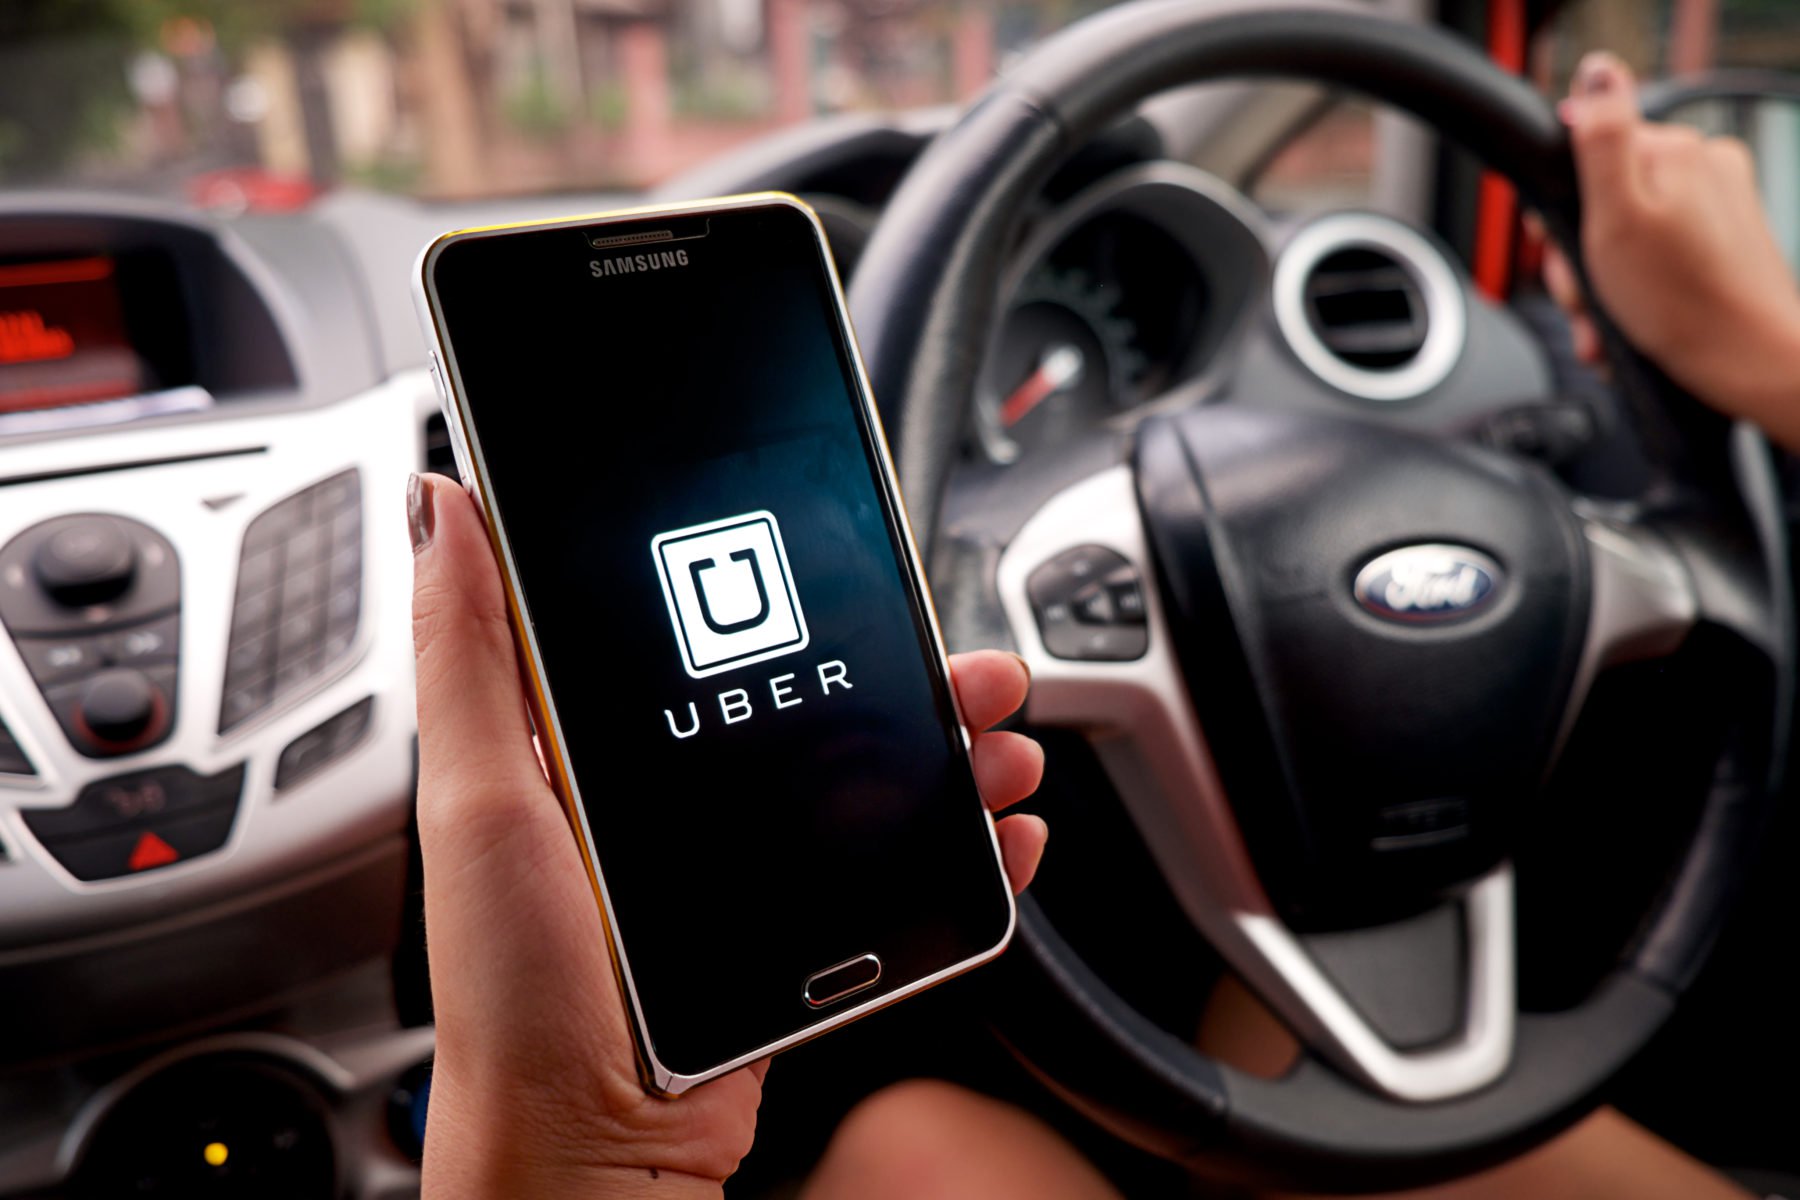 Por acuerdo con la Comisión Federal de Comercio, Uber pagará $148 millones por violación a privacidad de clientes en 2016